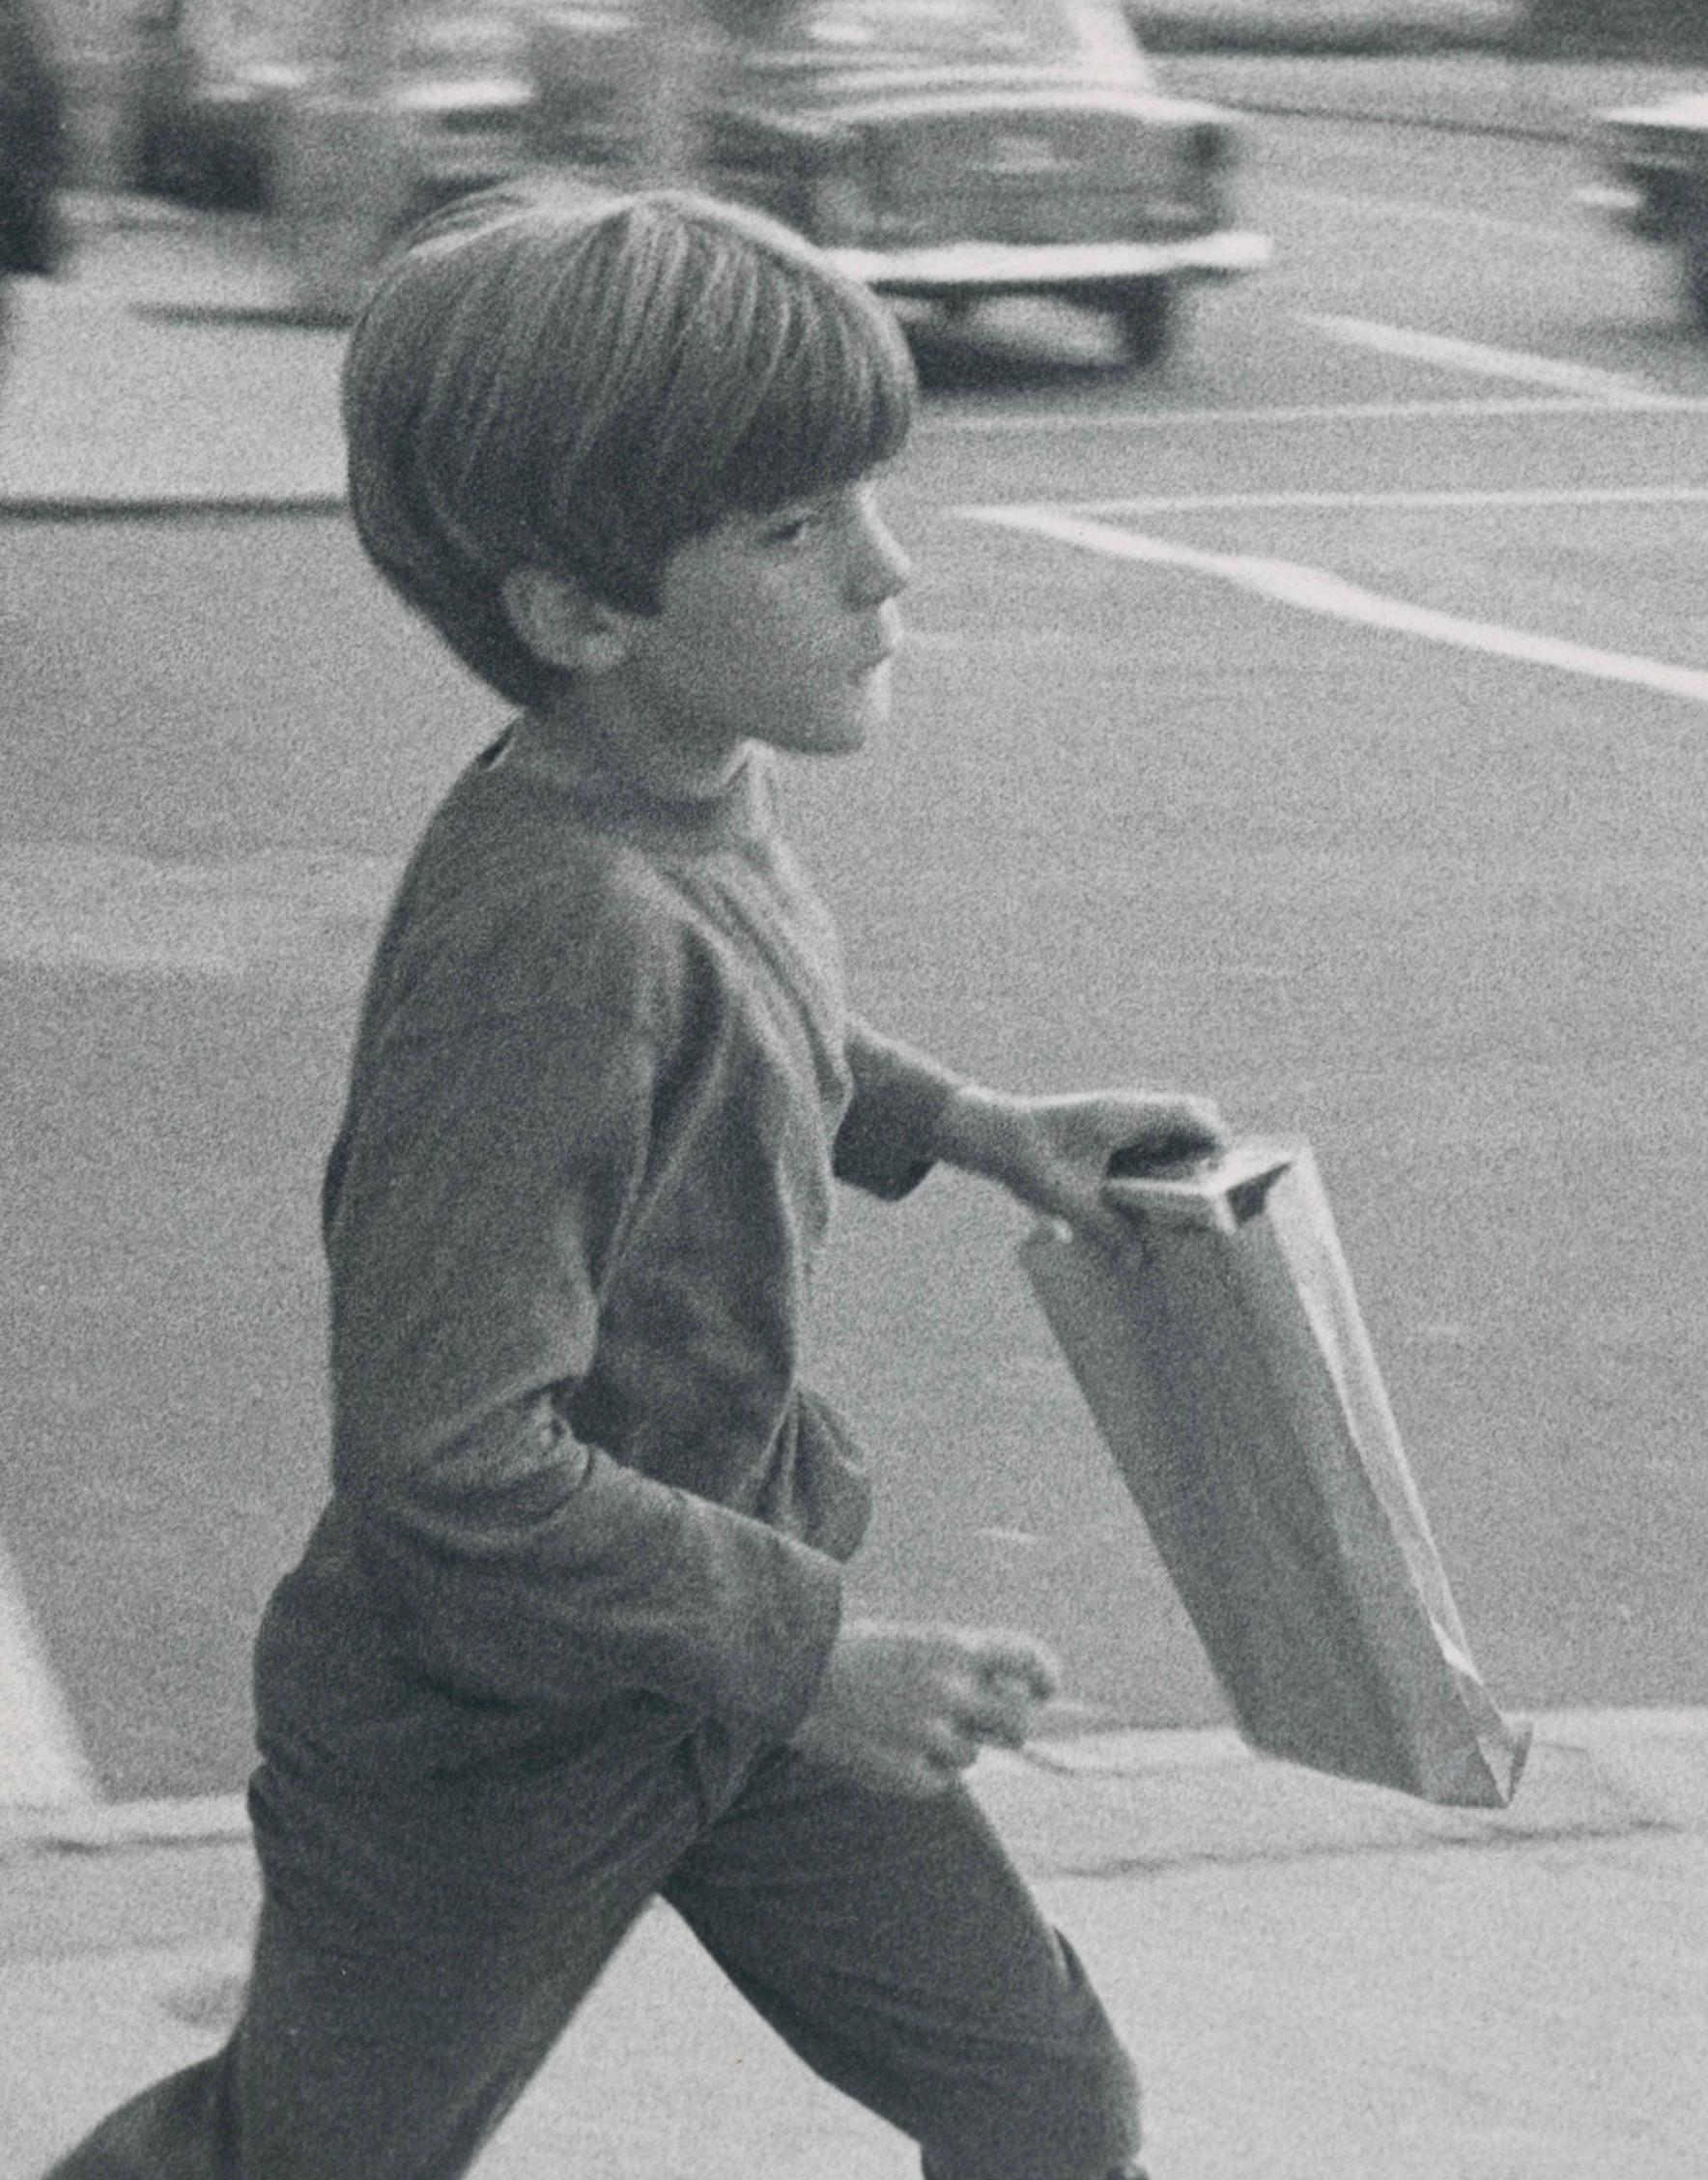 Jackie Kennedy, Schwarz-Weiß-Fotografie, ca. 1970er Jahre, 25,4 x 20,5 cm – Photograph von Oscar Abolafia